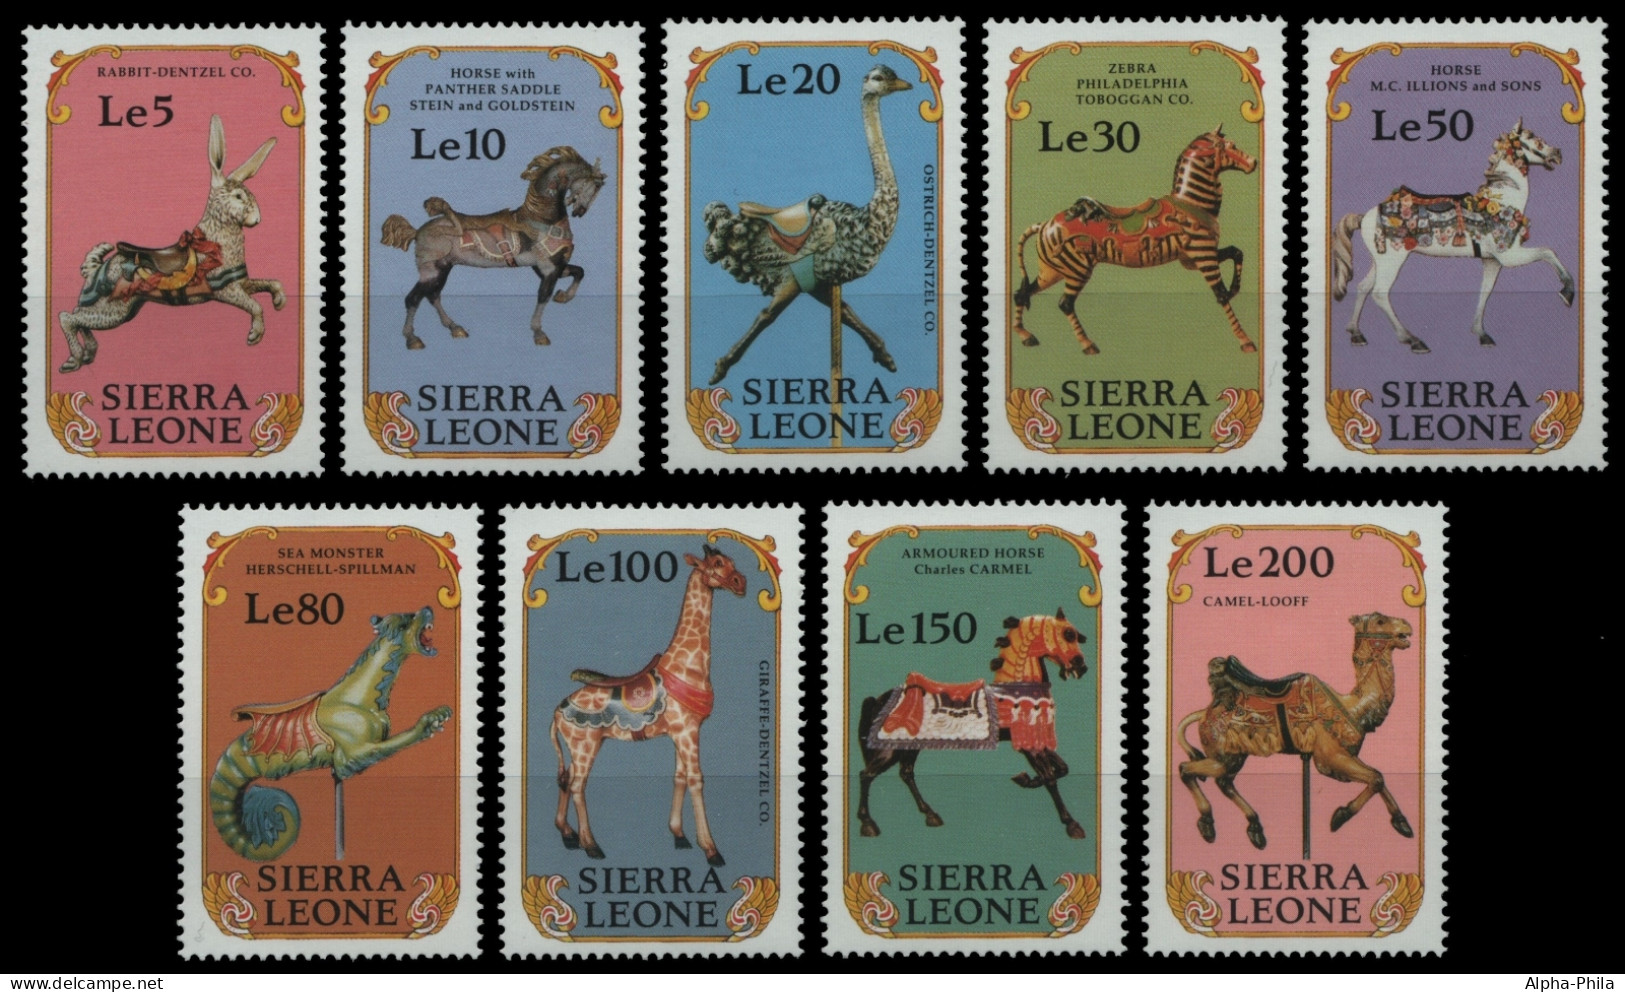 Sierra Leone 1990 - Mi-Nr. 1498-1506 ** - MNH - Karussell / Carousel - Sierra Leone (1961-...)